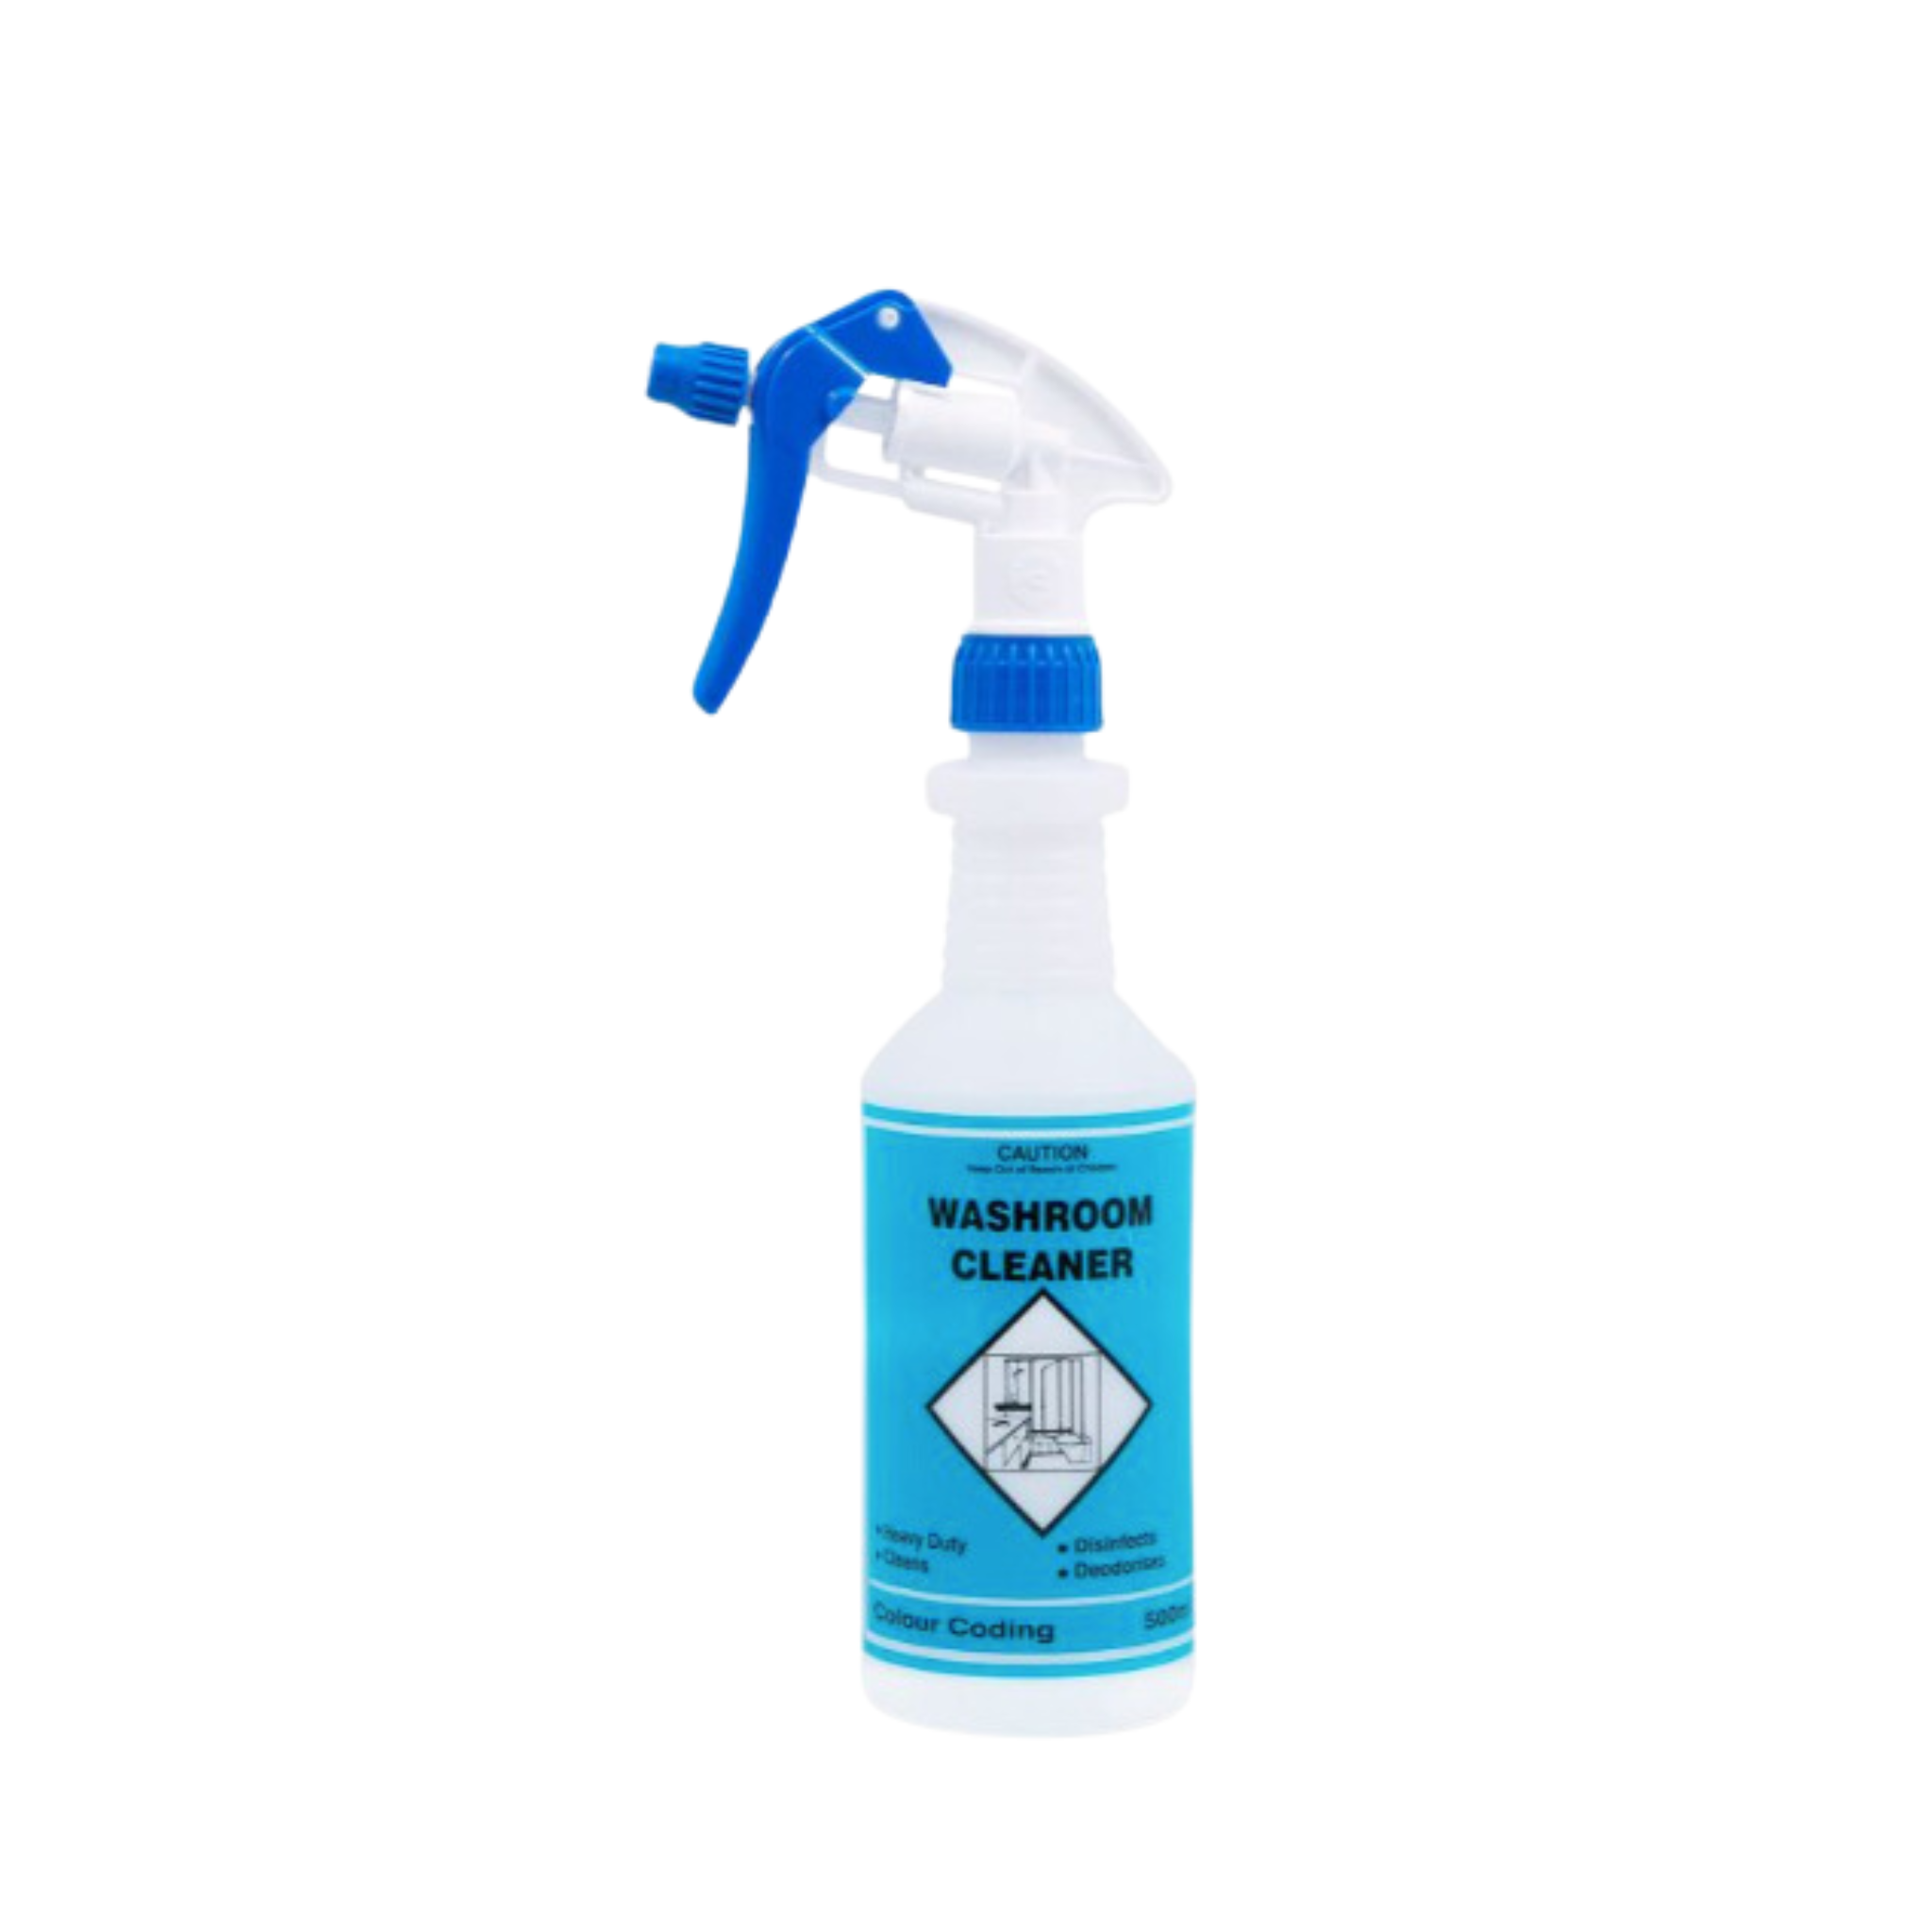 NAN Spray Trigger Bottle - Washroom Cleaner Sanitiser